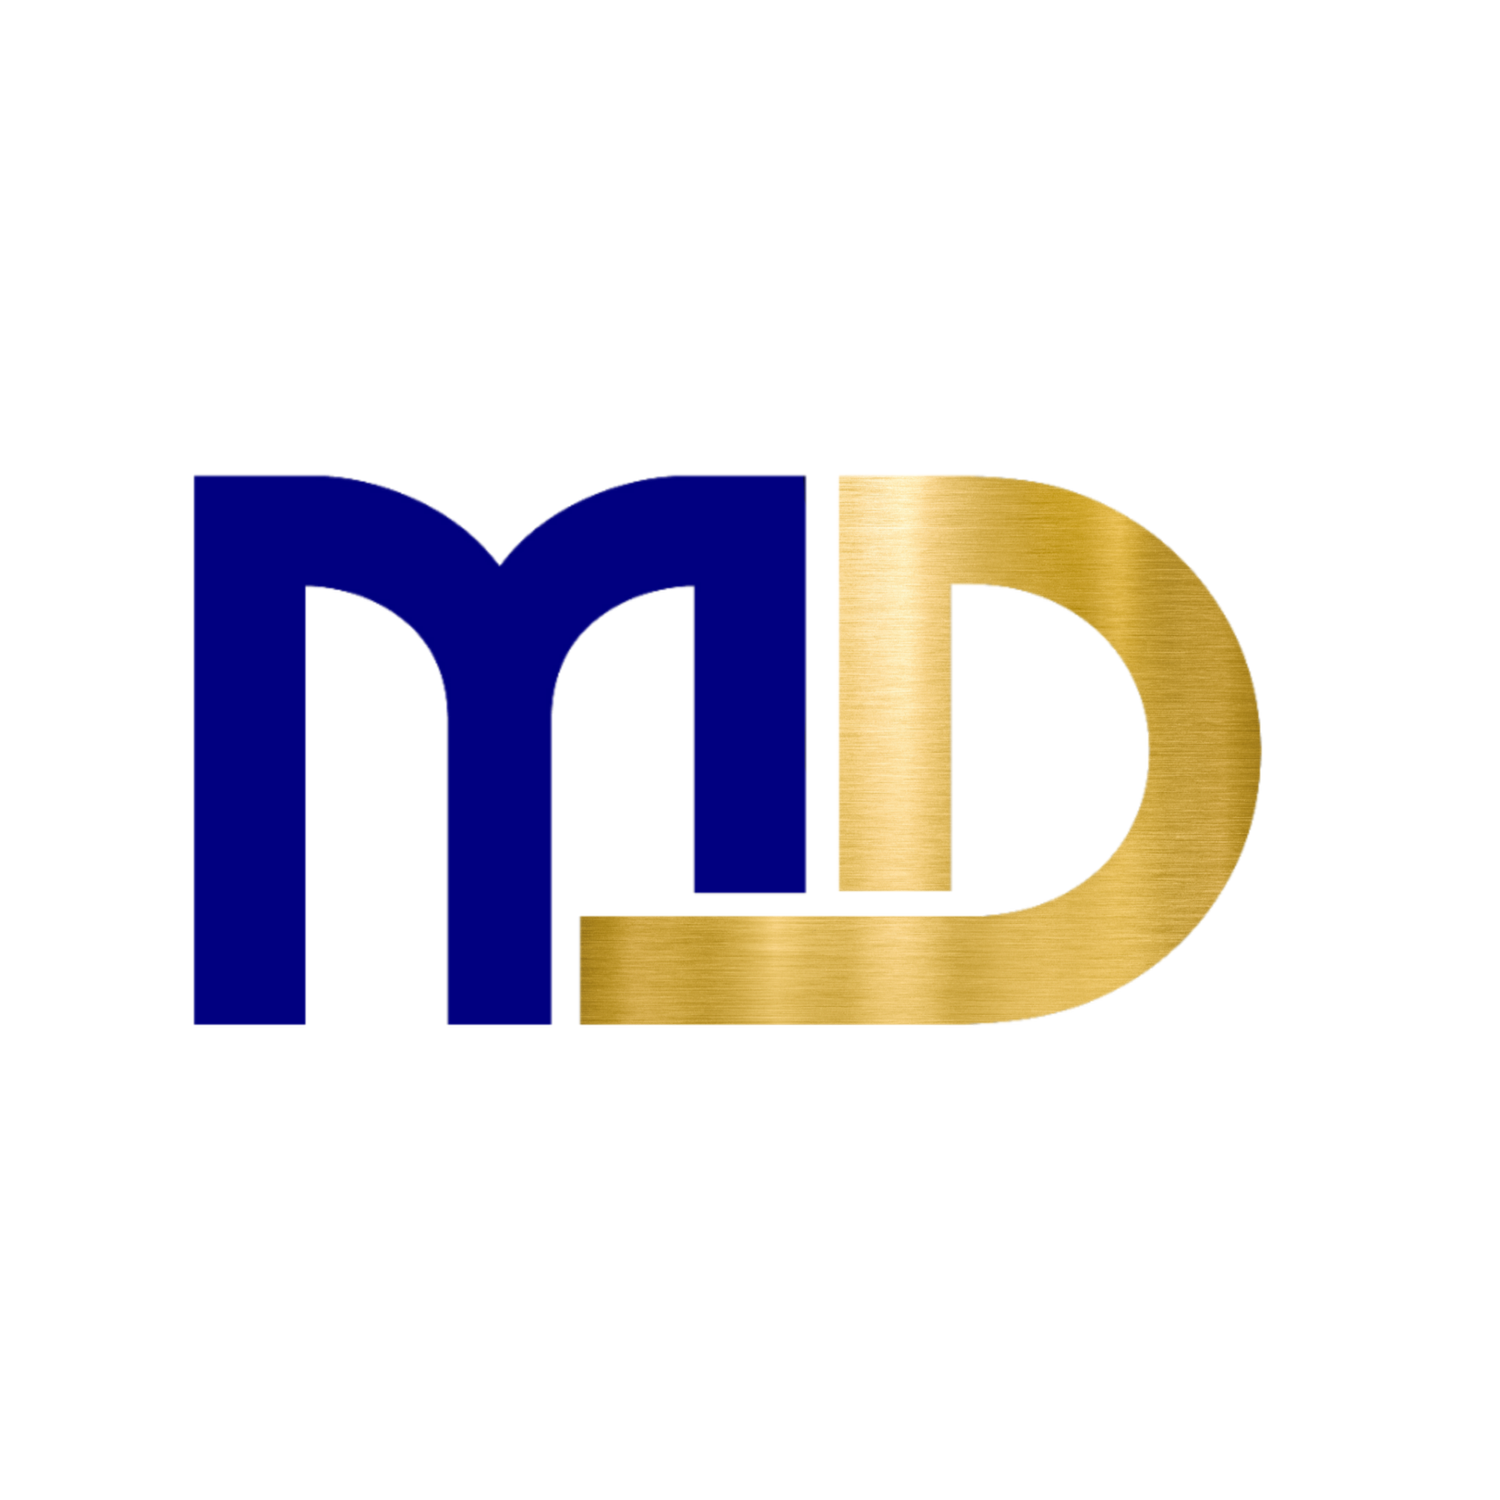 MD Global Enterprise Services